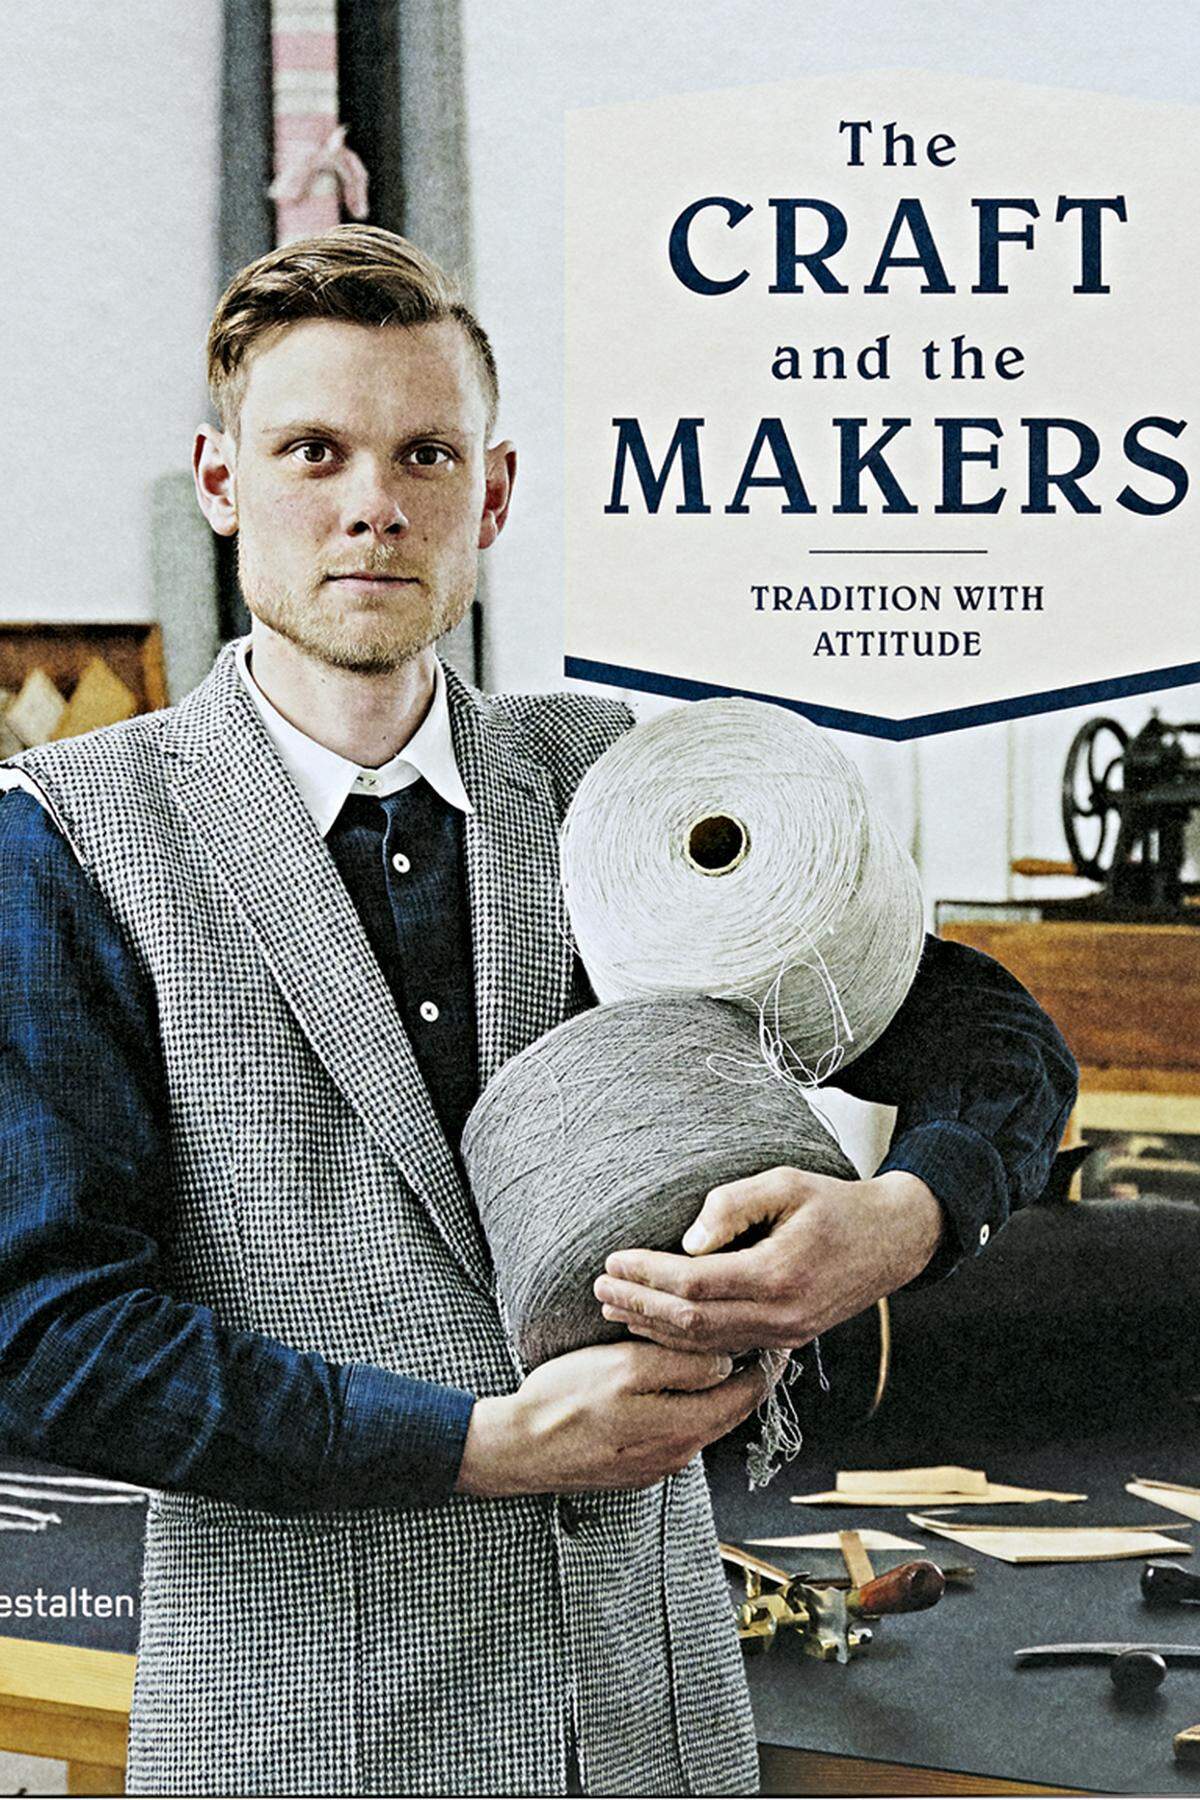 Macher und Manufakturen verarbeiten weit mehr als ihre Erfahrung: „The Craft and the Makers“ zeigt die Menschen mit Hingabe dahinter (Gestalten, 45 Euro).